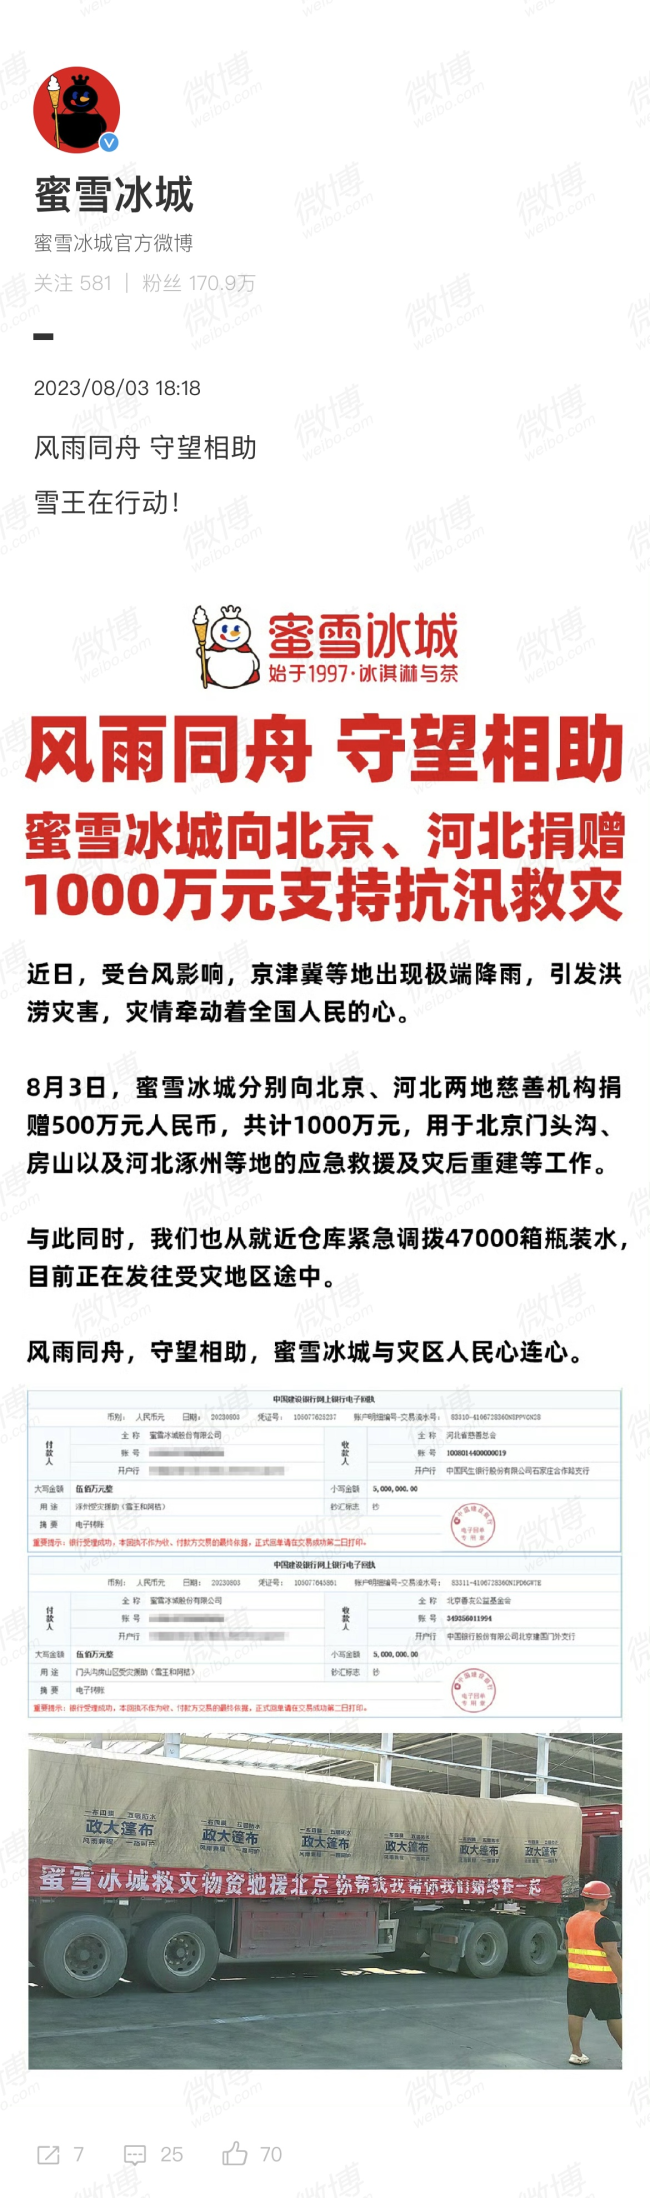 蜜雪冰城向京冀捐1000万 用于北京门头沟、房山以及河北涿州等地的应急救援及灾后重建等工作